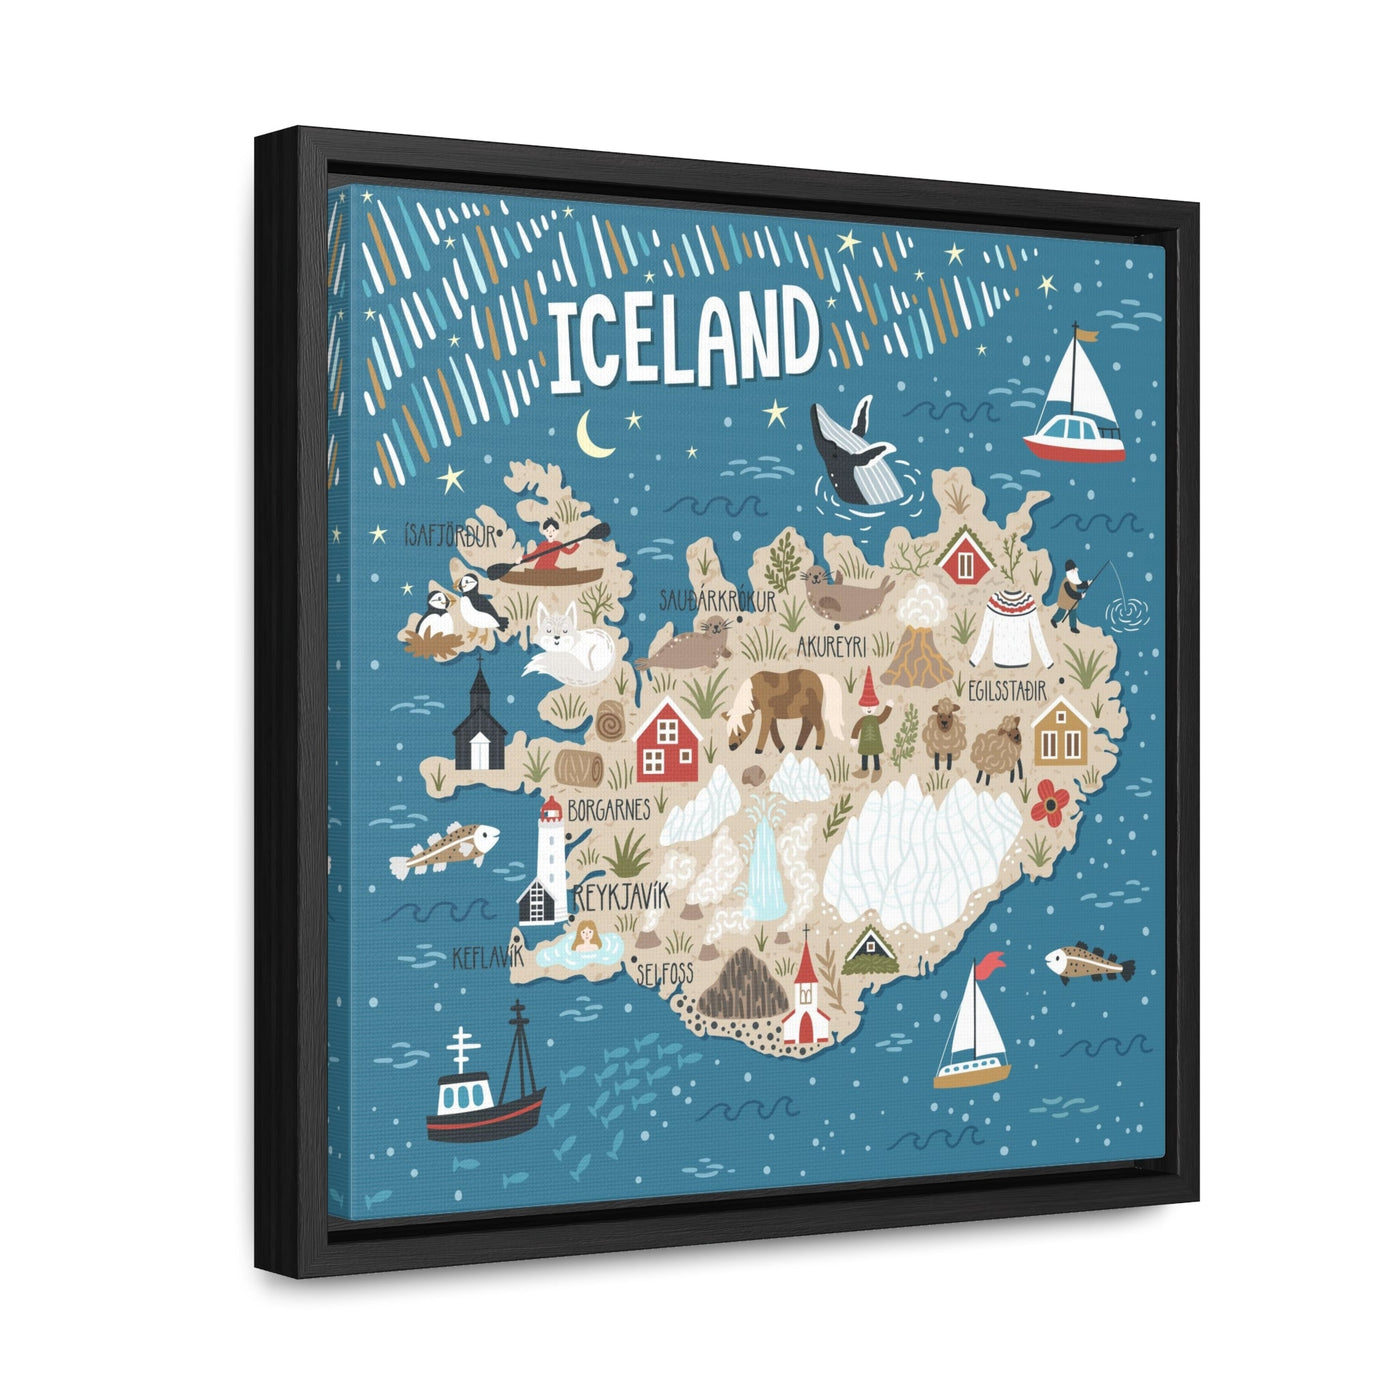 Iceland Stylized Map Framed Canvas - Ezra's Clothing